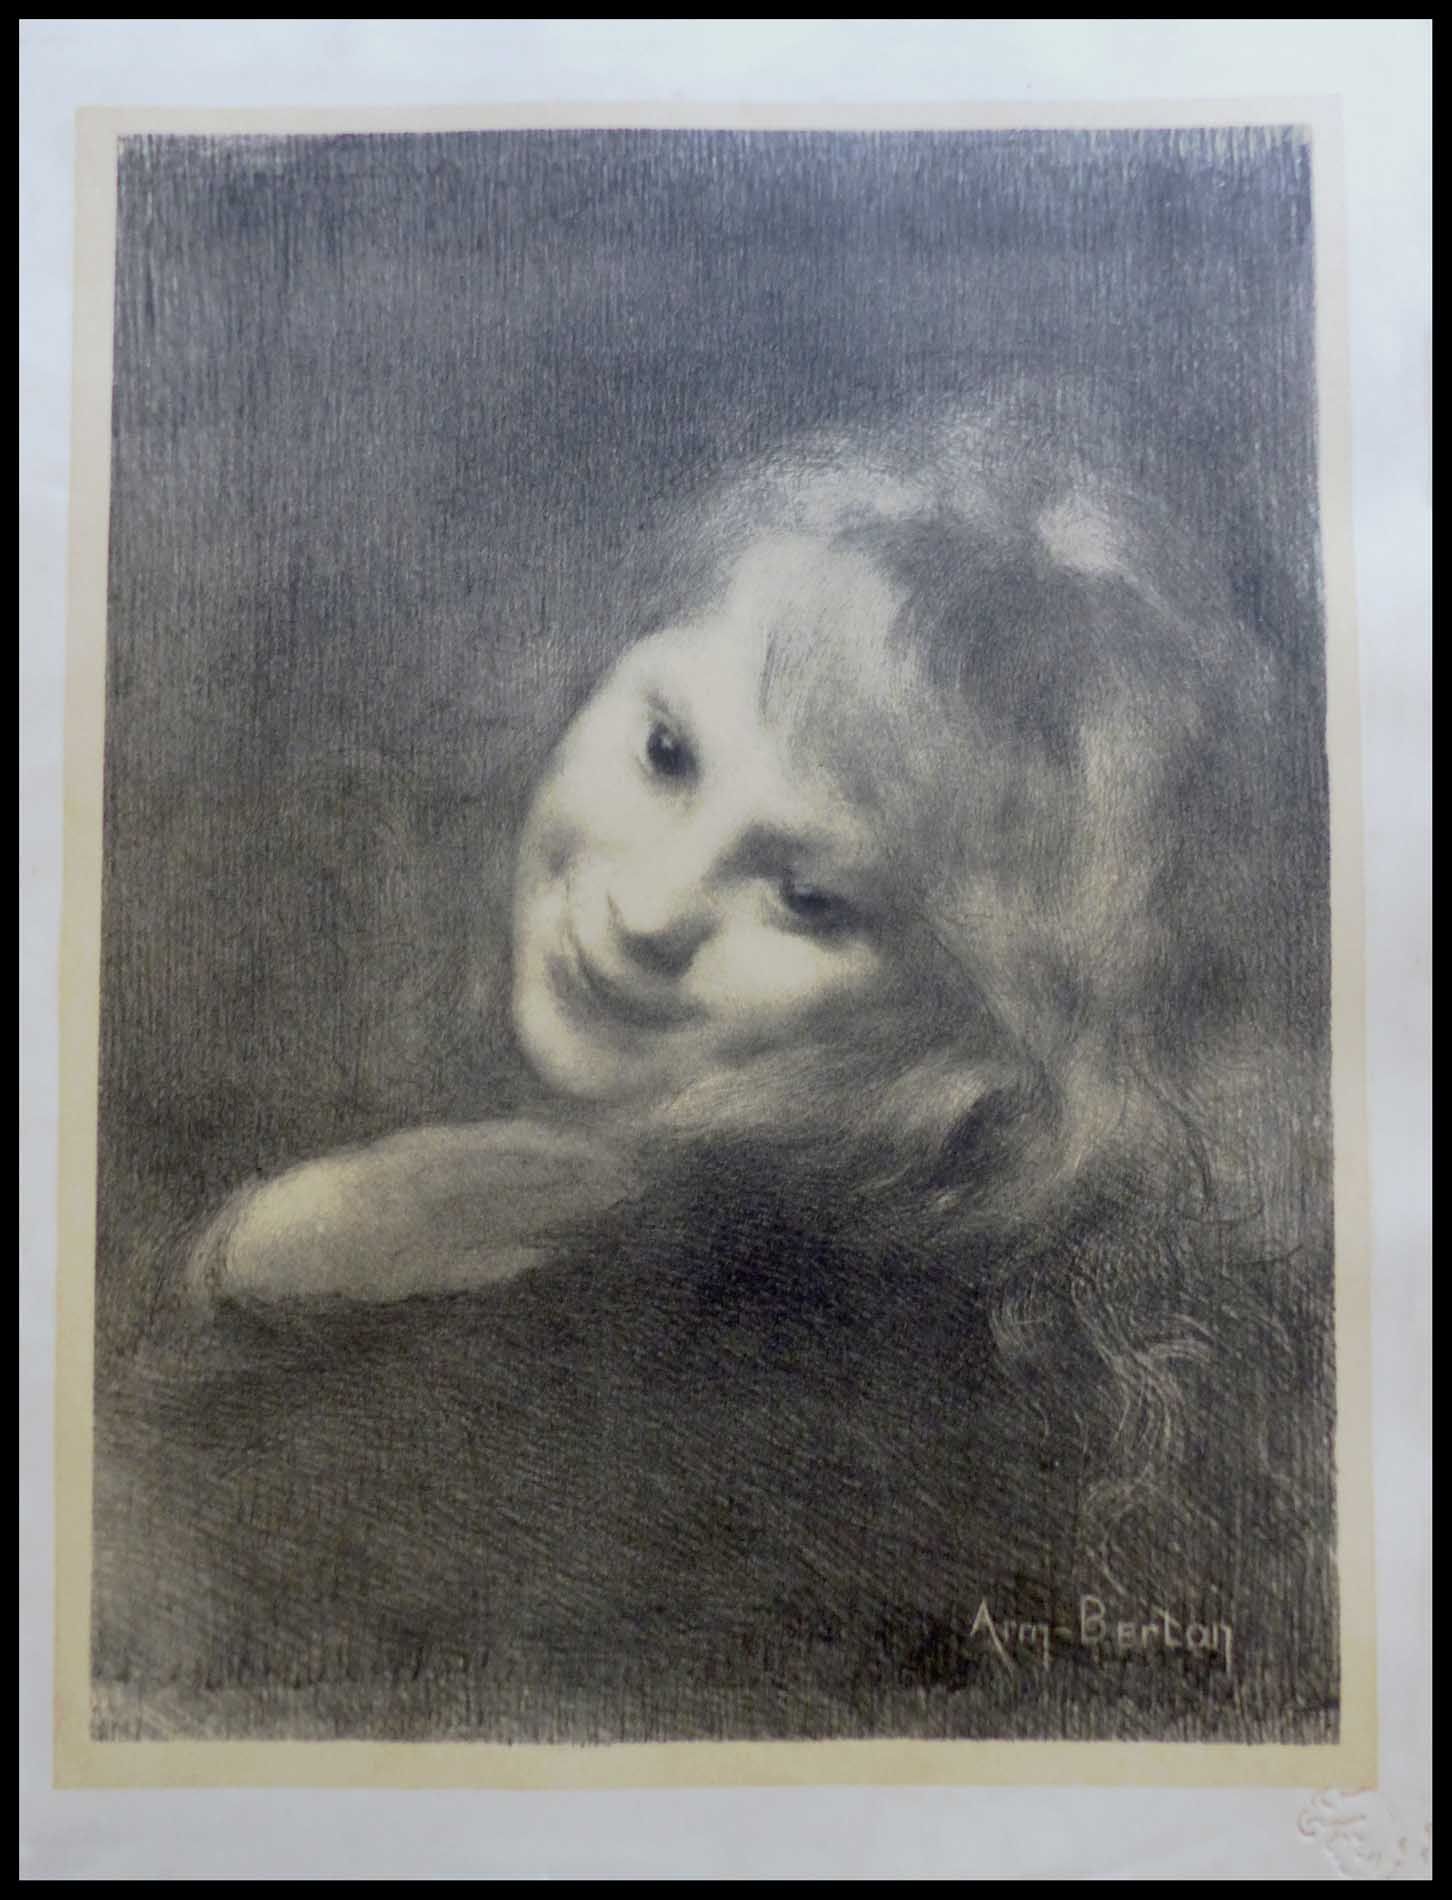 E. Frey Armand BERTON : (1864 - 1927)

RIEUSE

1897

Lithographie originale

Œuv&hellip;